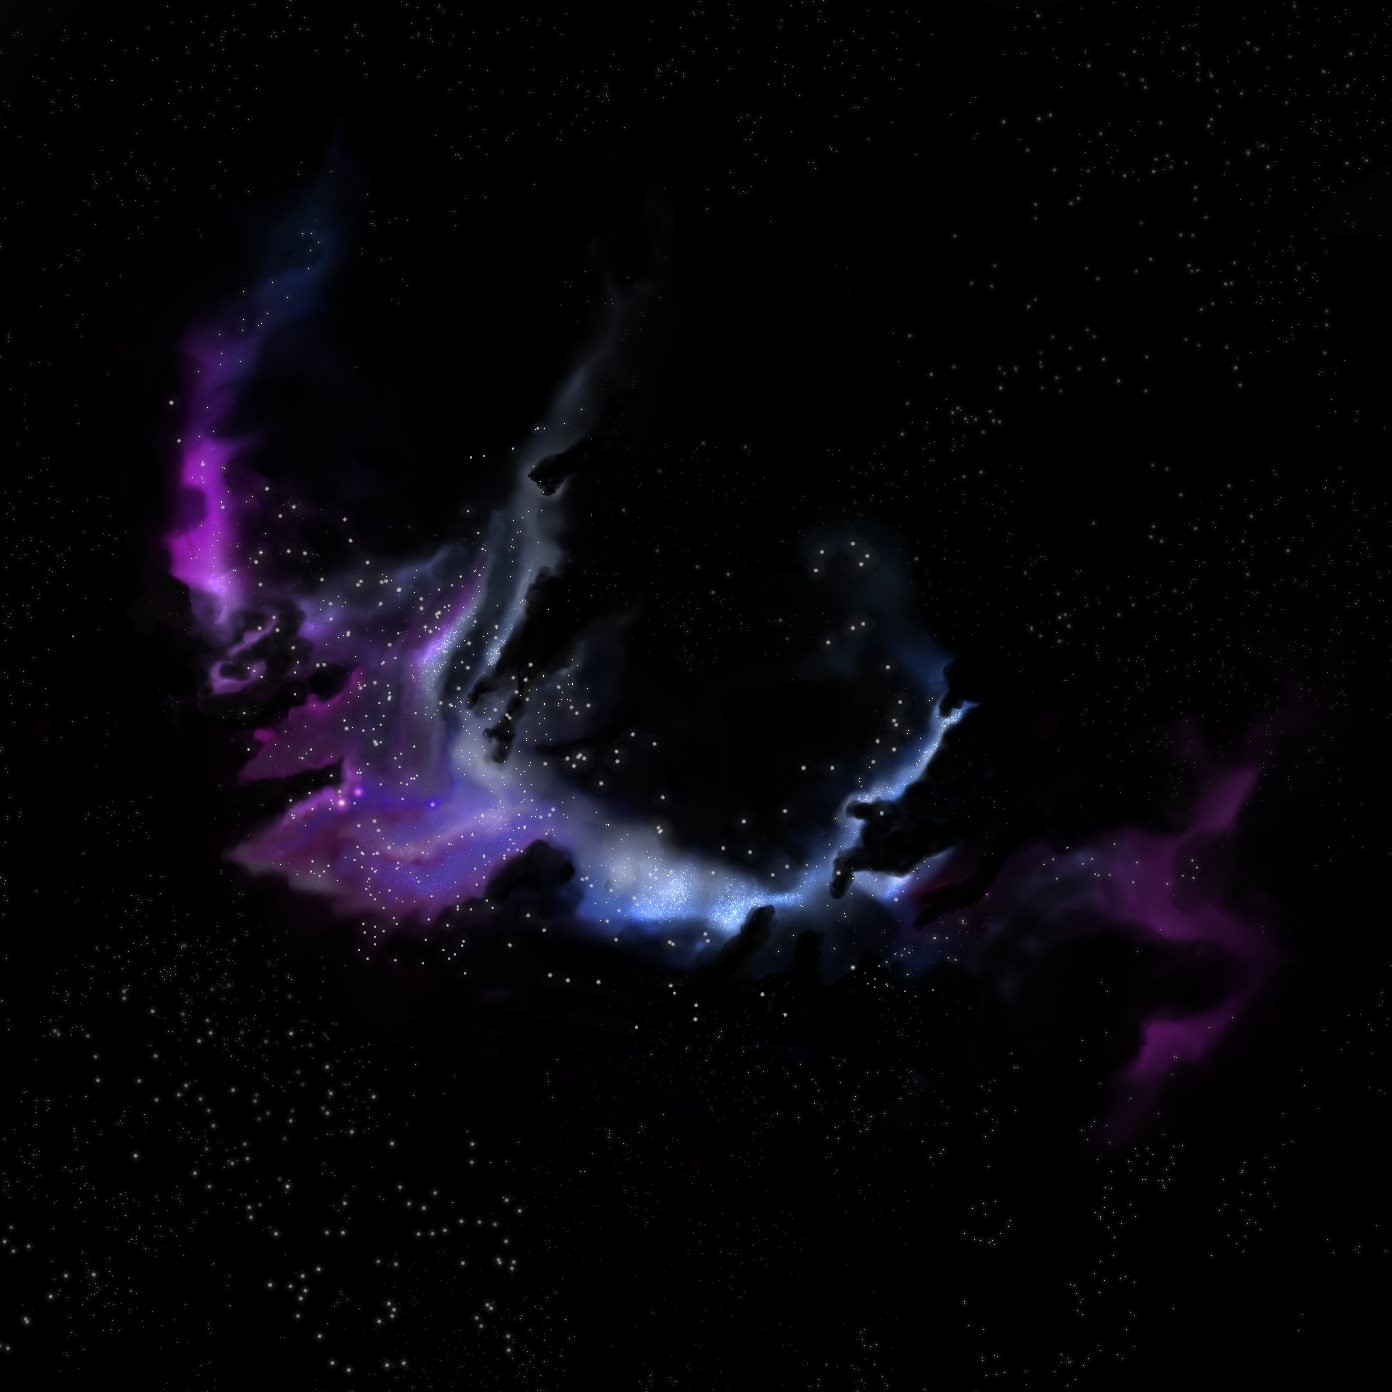 Звёздное небо и космос в картинках - Страница 12 Dirk-veldhuizen-nebula2notext